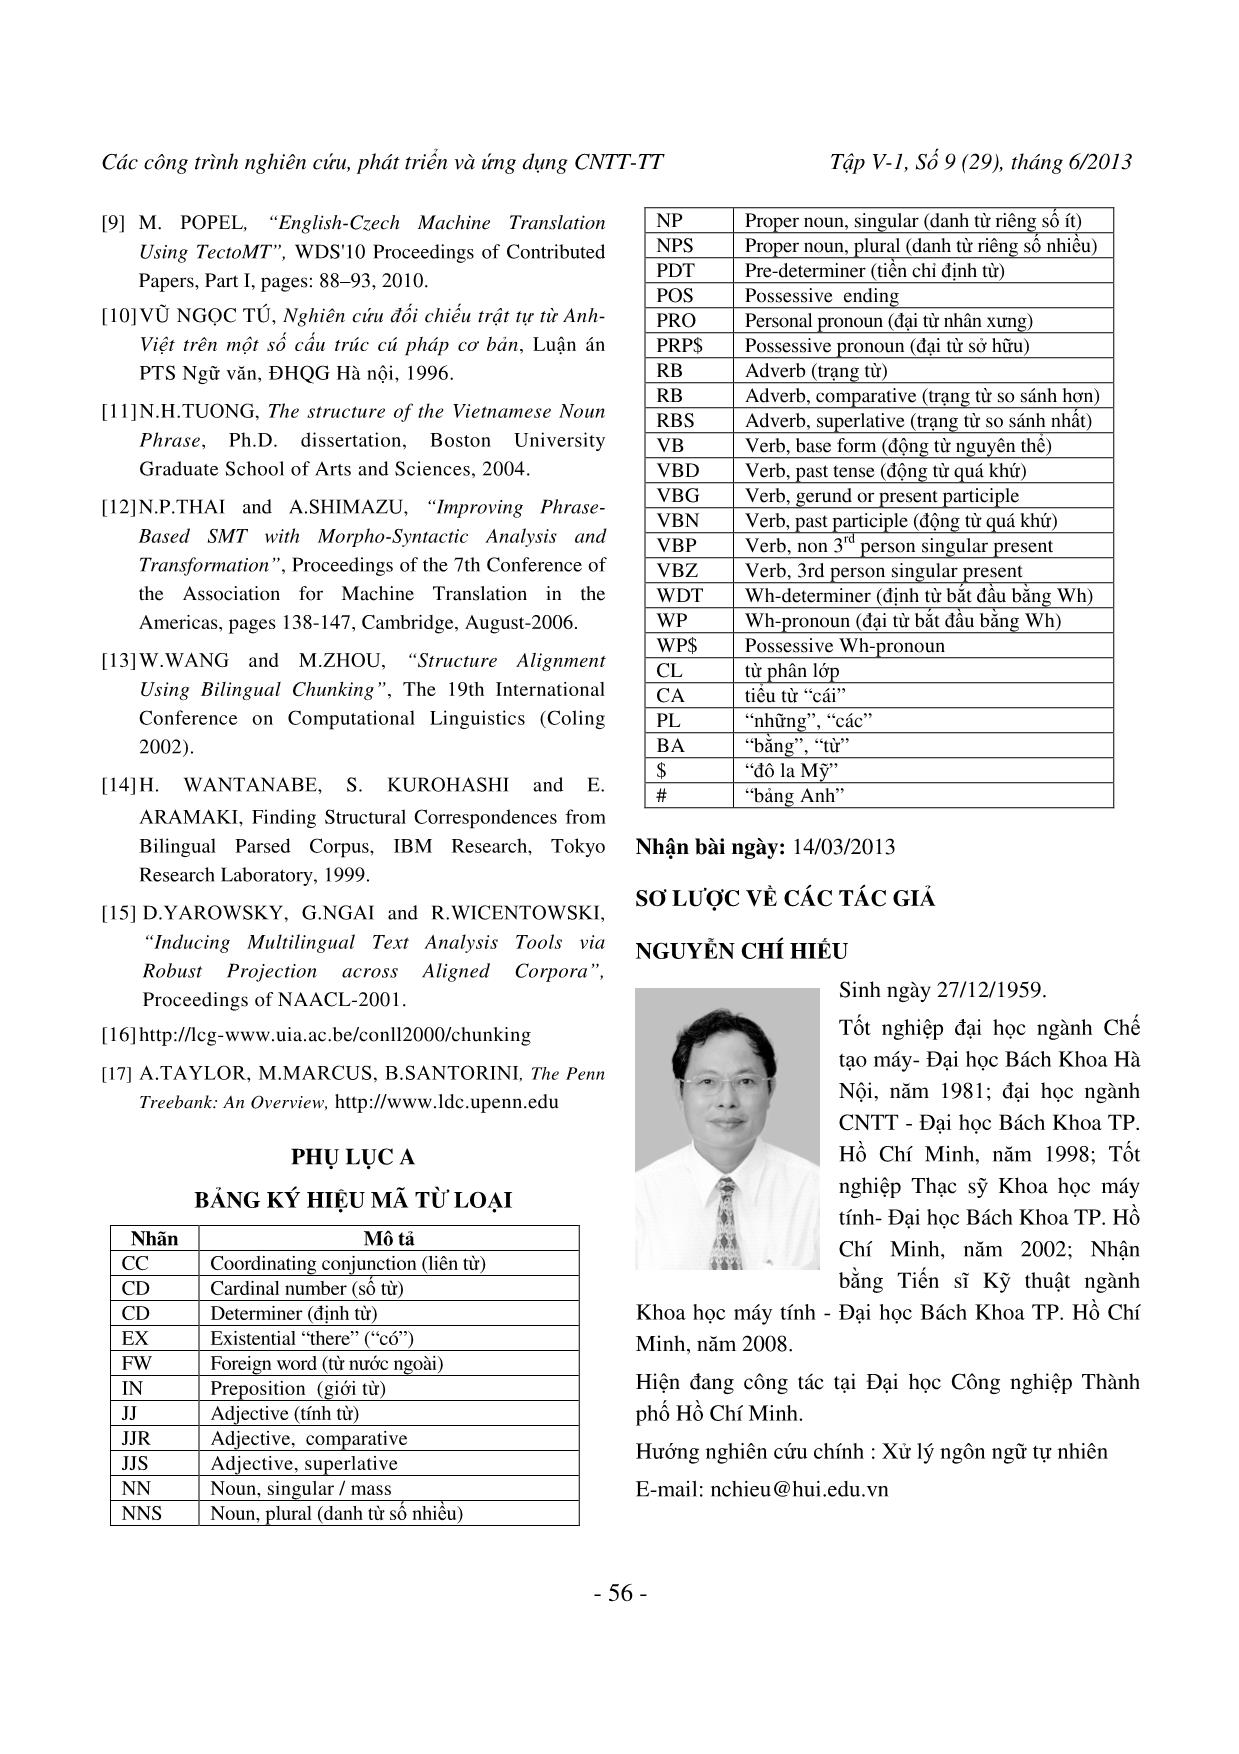 Chuyển đổi cây cú pháp cụm danh từ tiếng Anh theo tiếng Việt trang 9